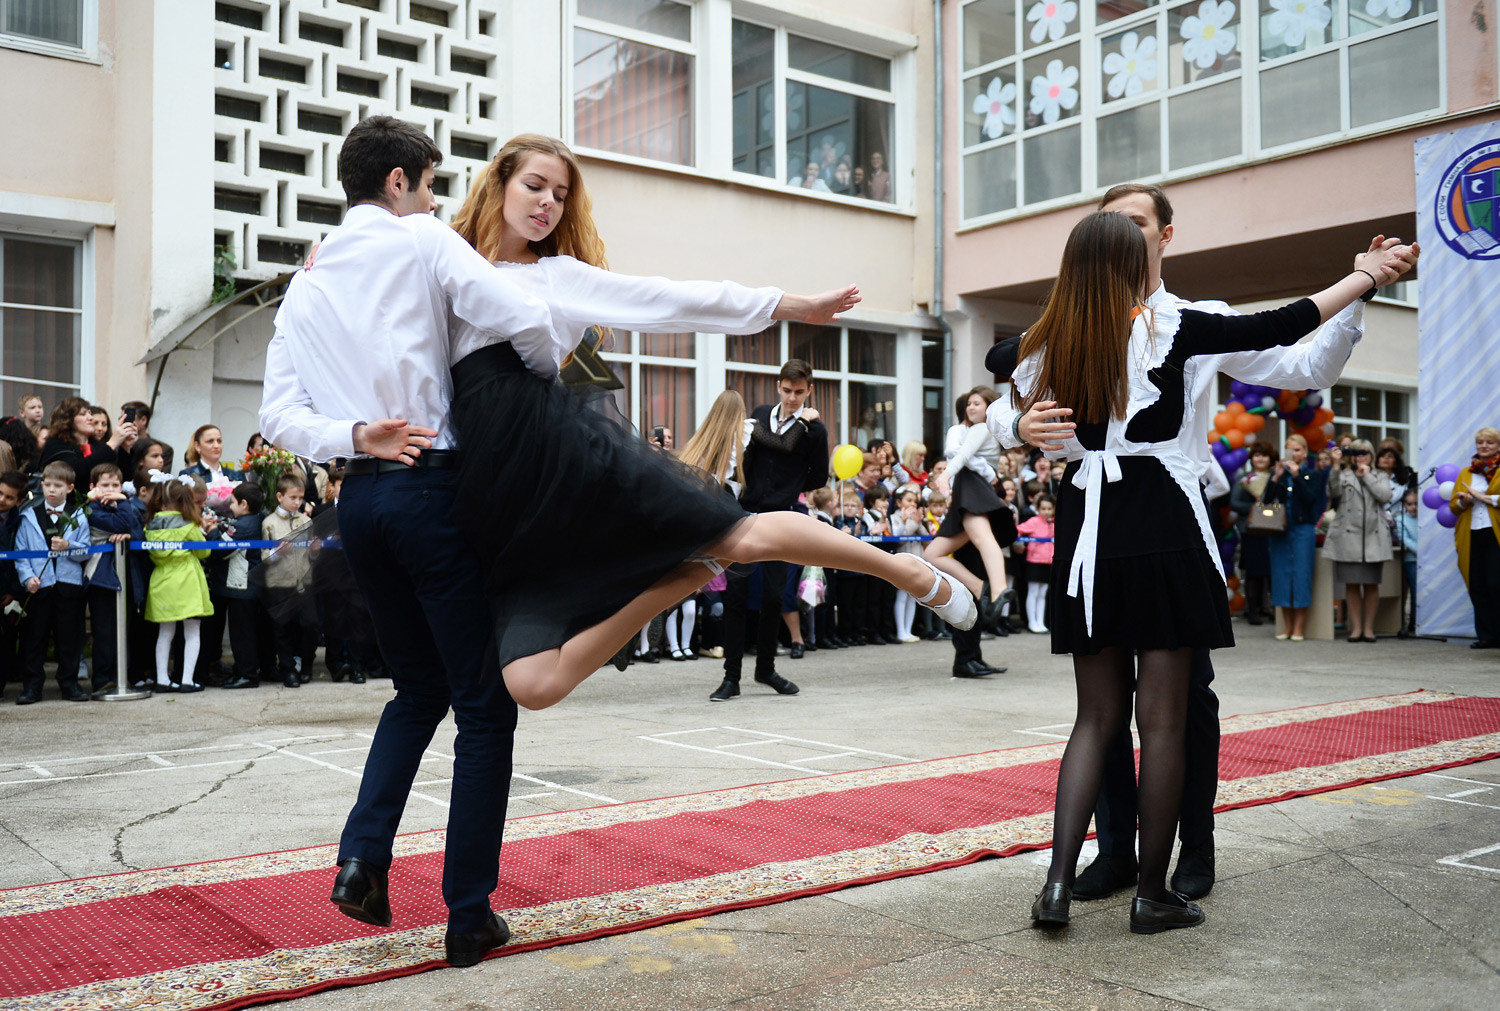 Ђаци плешу на церемонији „Последњег звона“ у Школи бр. 8 у Сочију. 